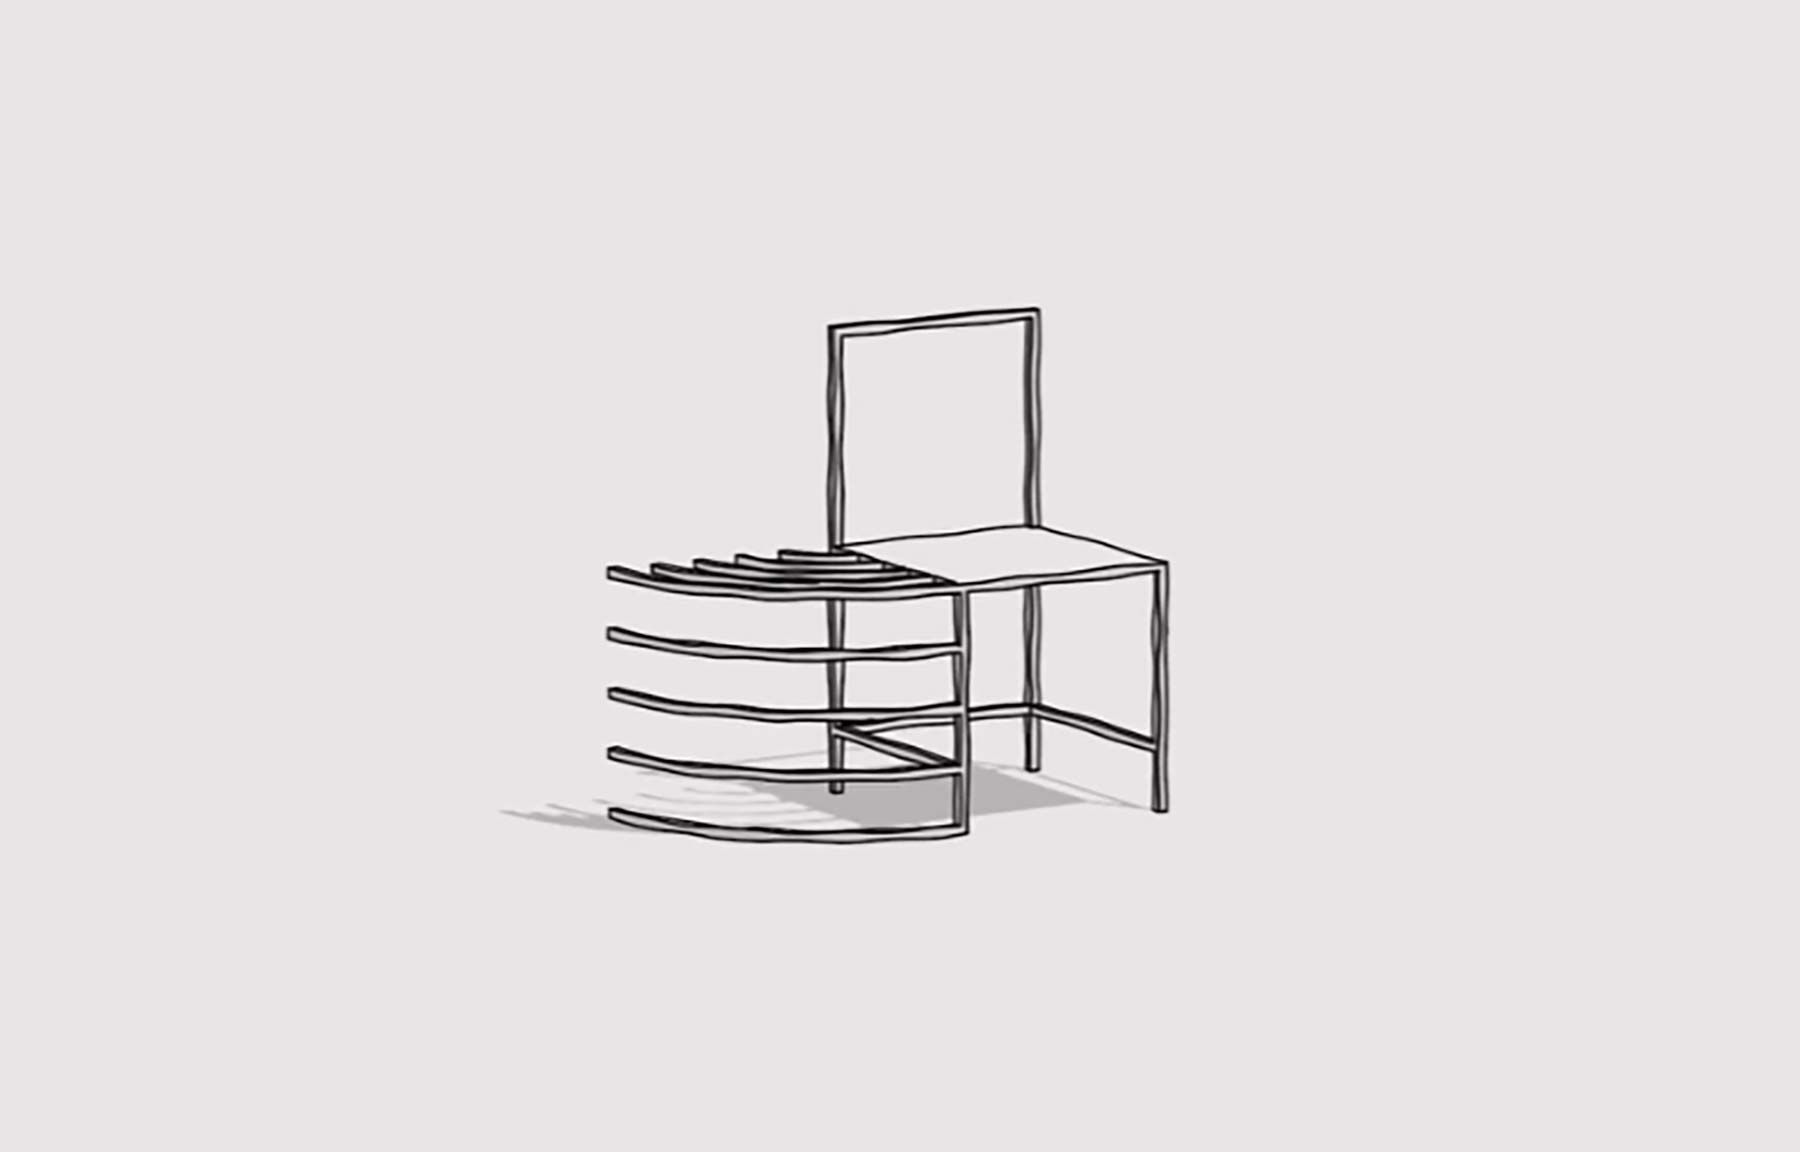 1 chair, 50 animations – “Manga Chairs”